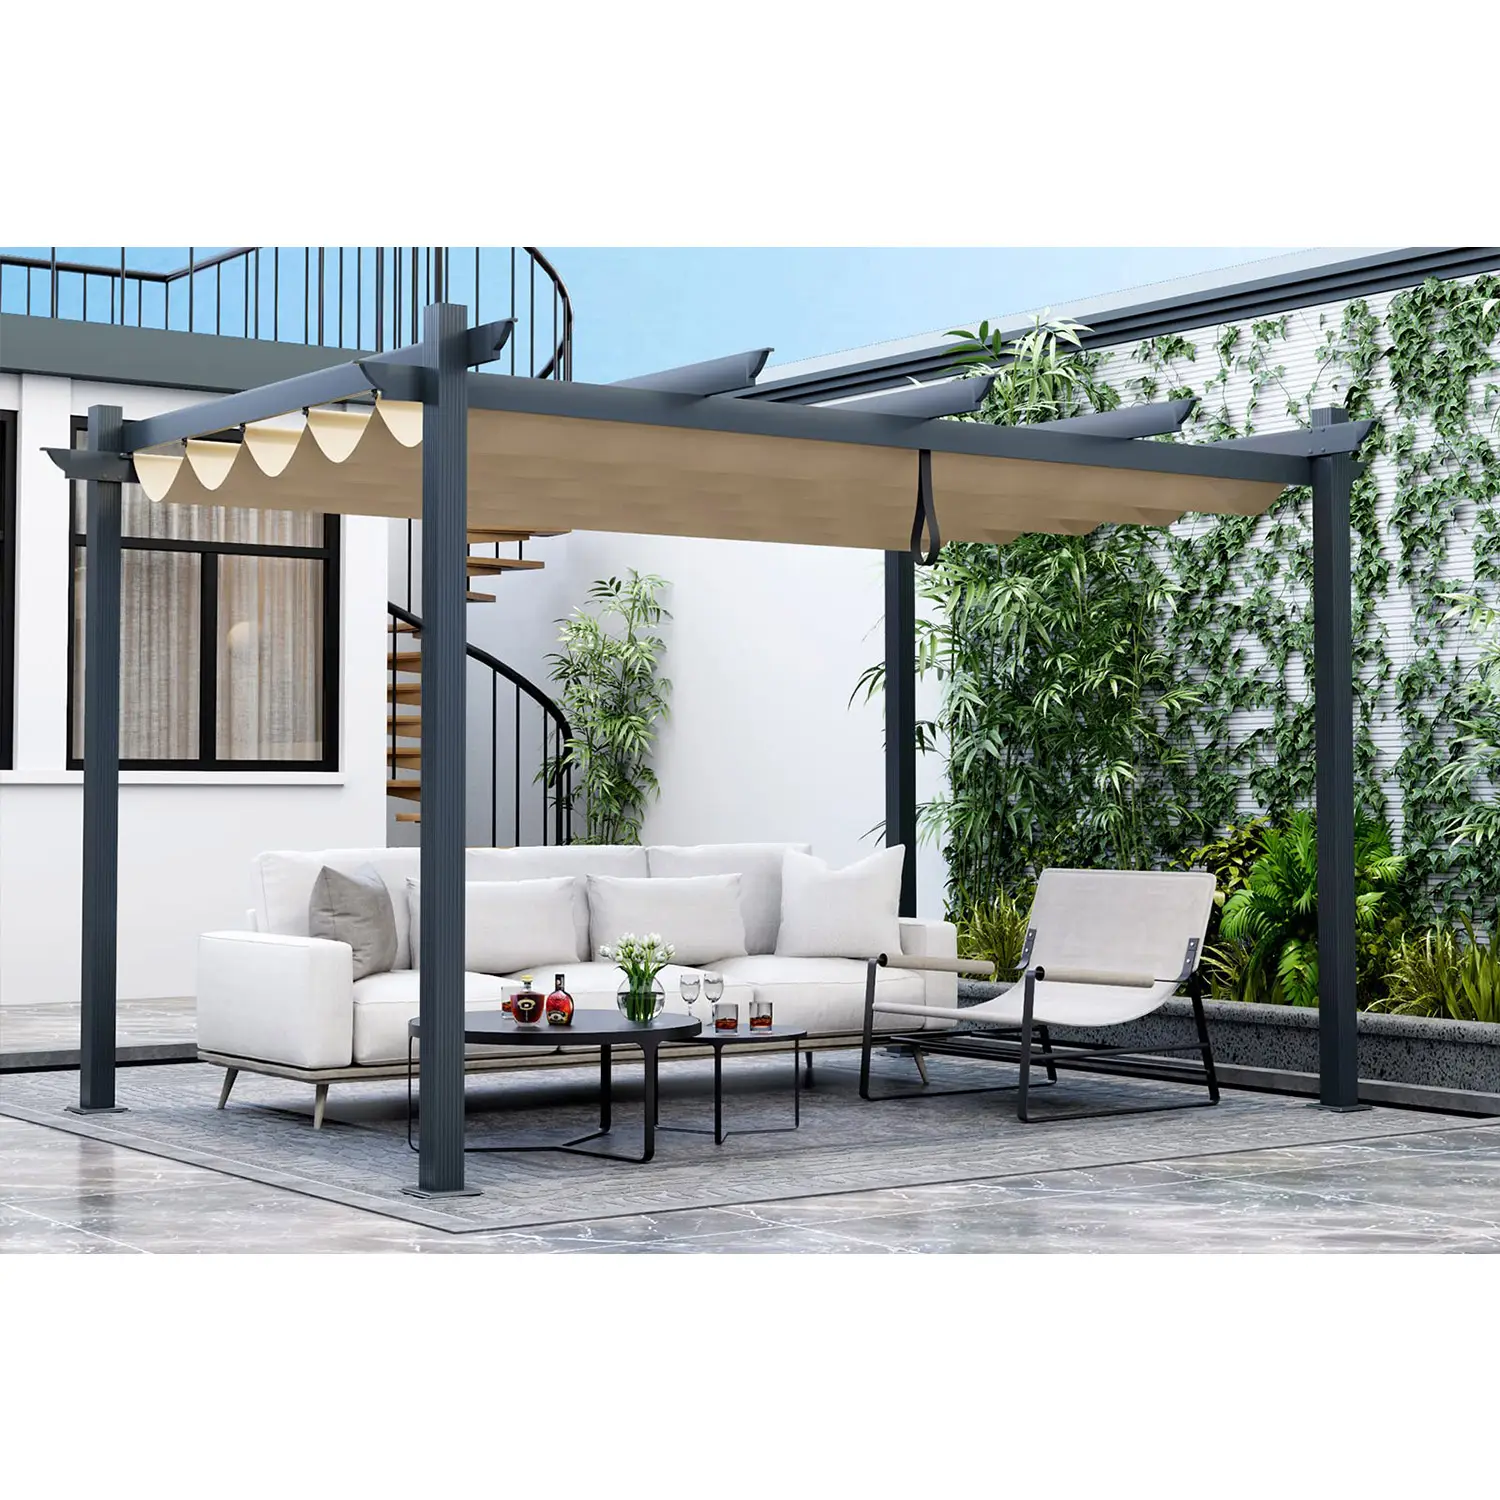 Geri çekilebilir güneş gölge gölgelik ile 3x4m ağır alüminyum açık Pergola, ekstra büyük veranda barınak Pavilion 10x13 Ft